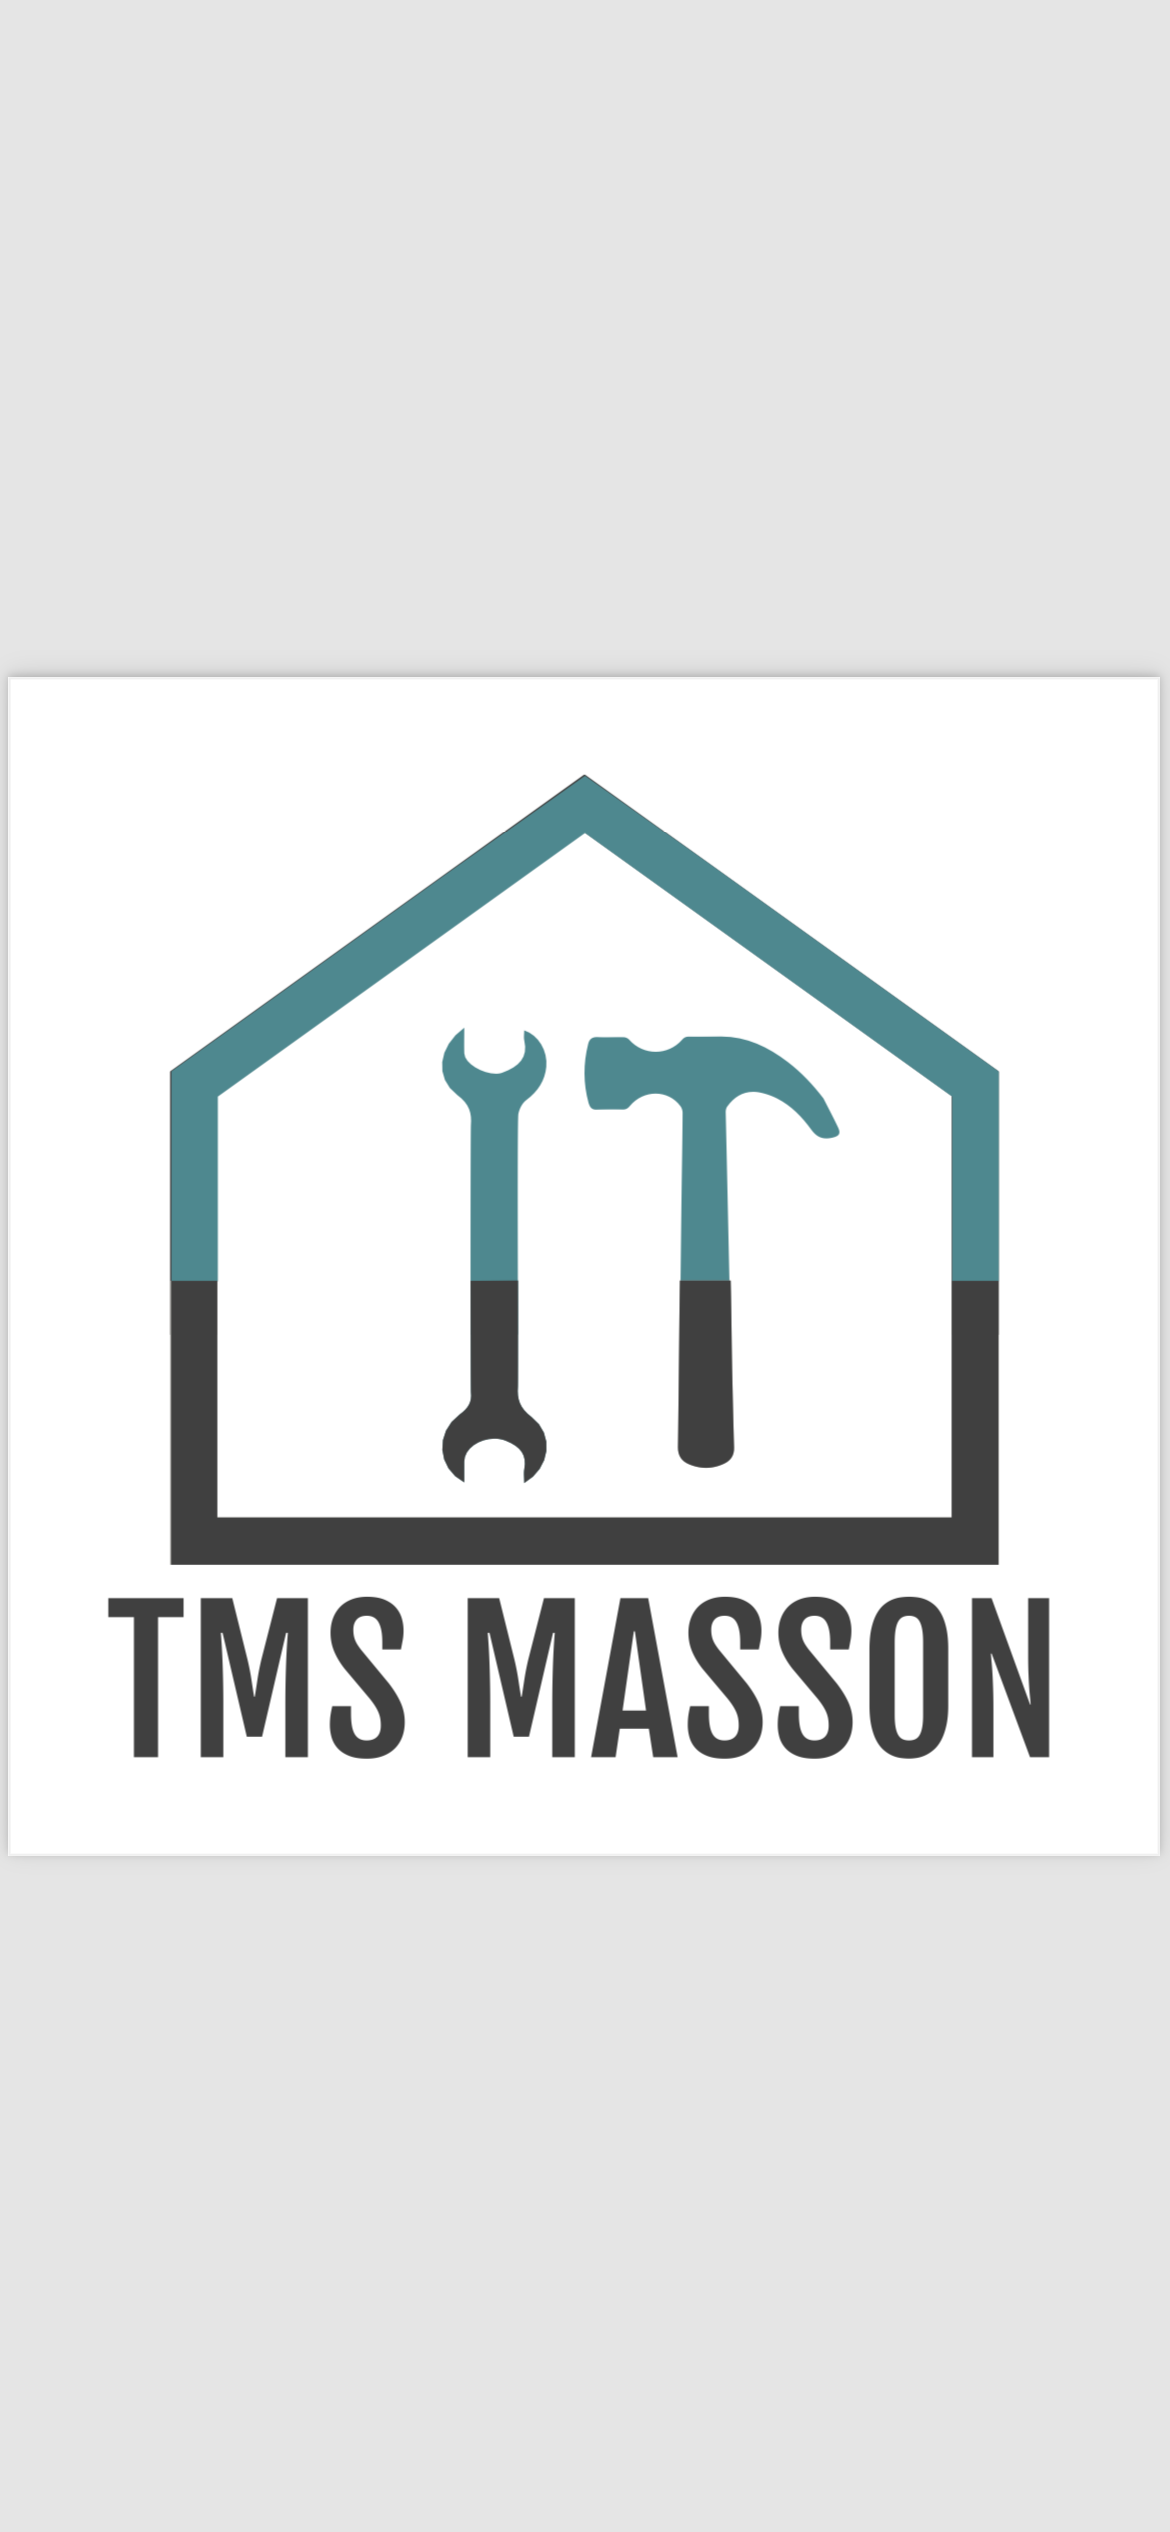 Logo de Tms masson, société de travaux en Elagage / Taille